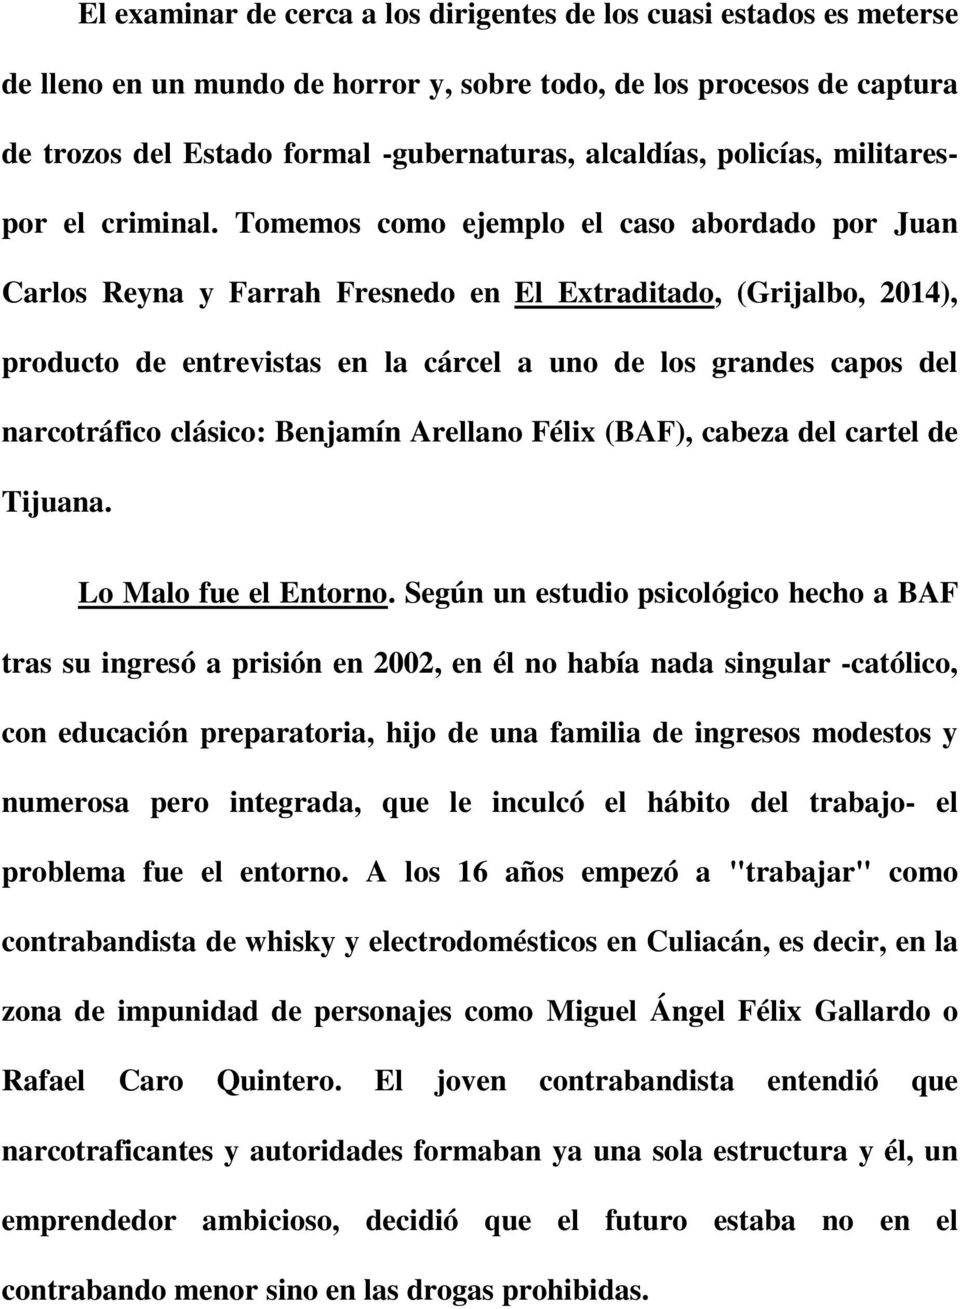 Tomemos como ejemplo el caso abordado por Juan Carlos Reyna y Farrah Fresnedo en El Extraditado, (Grijalbo, 2014), producto de entrevistas en la cárcel a uno de los grandes capos del narcotráfico